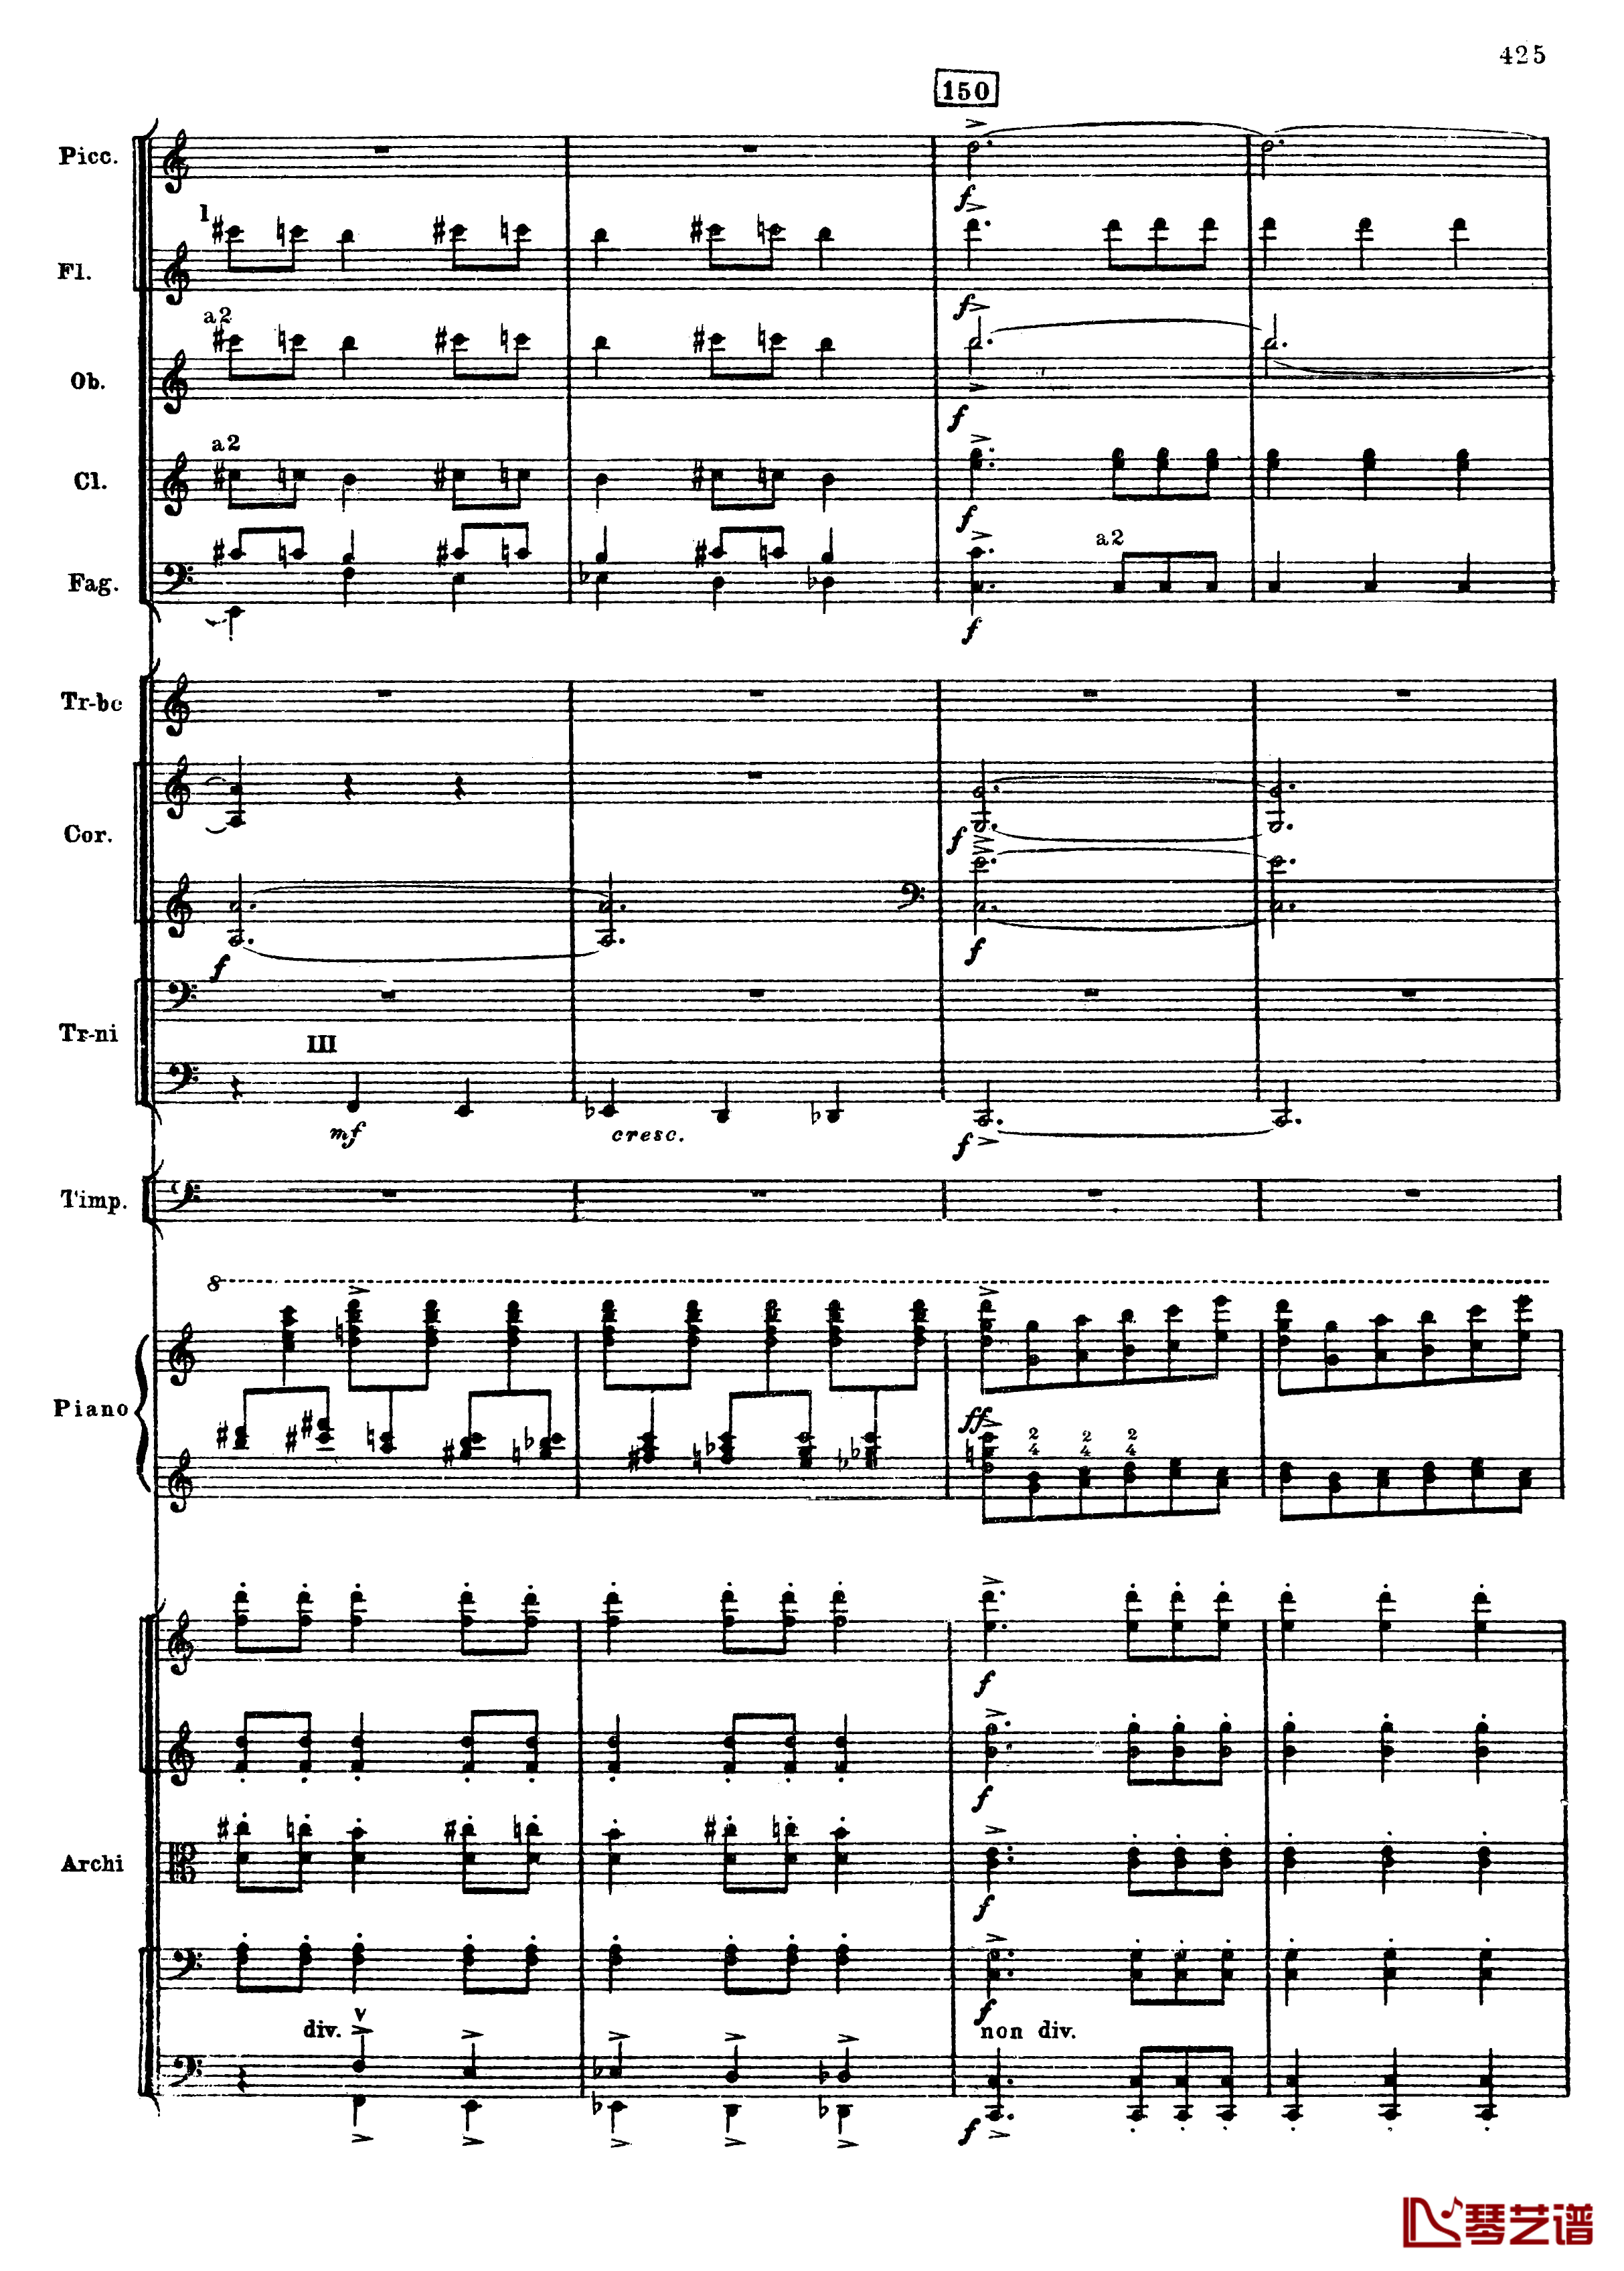 普罗科菲耶夫第三钢琴协奏曲钢琴谱-总谱-普罗科非耶夫157